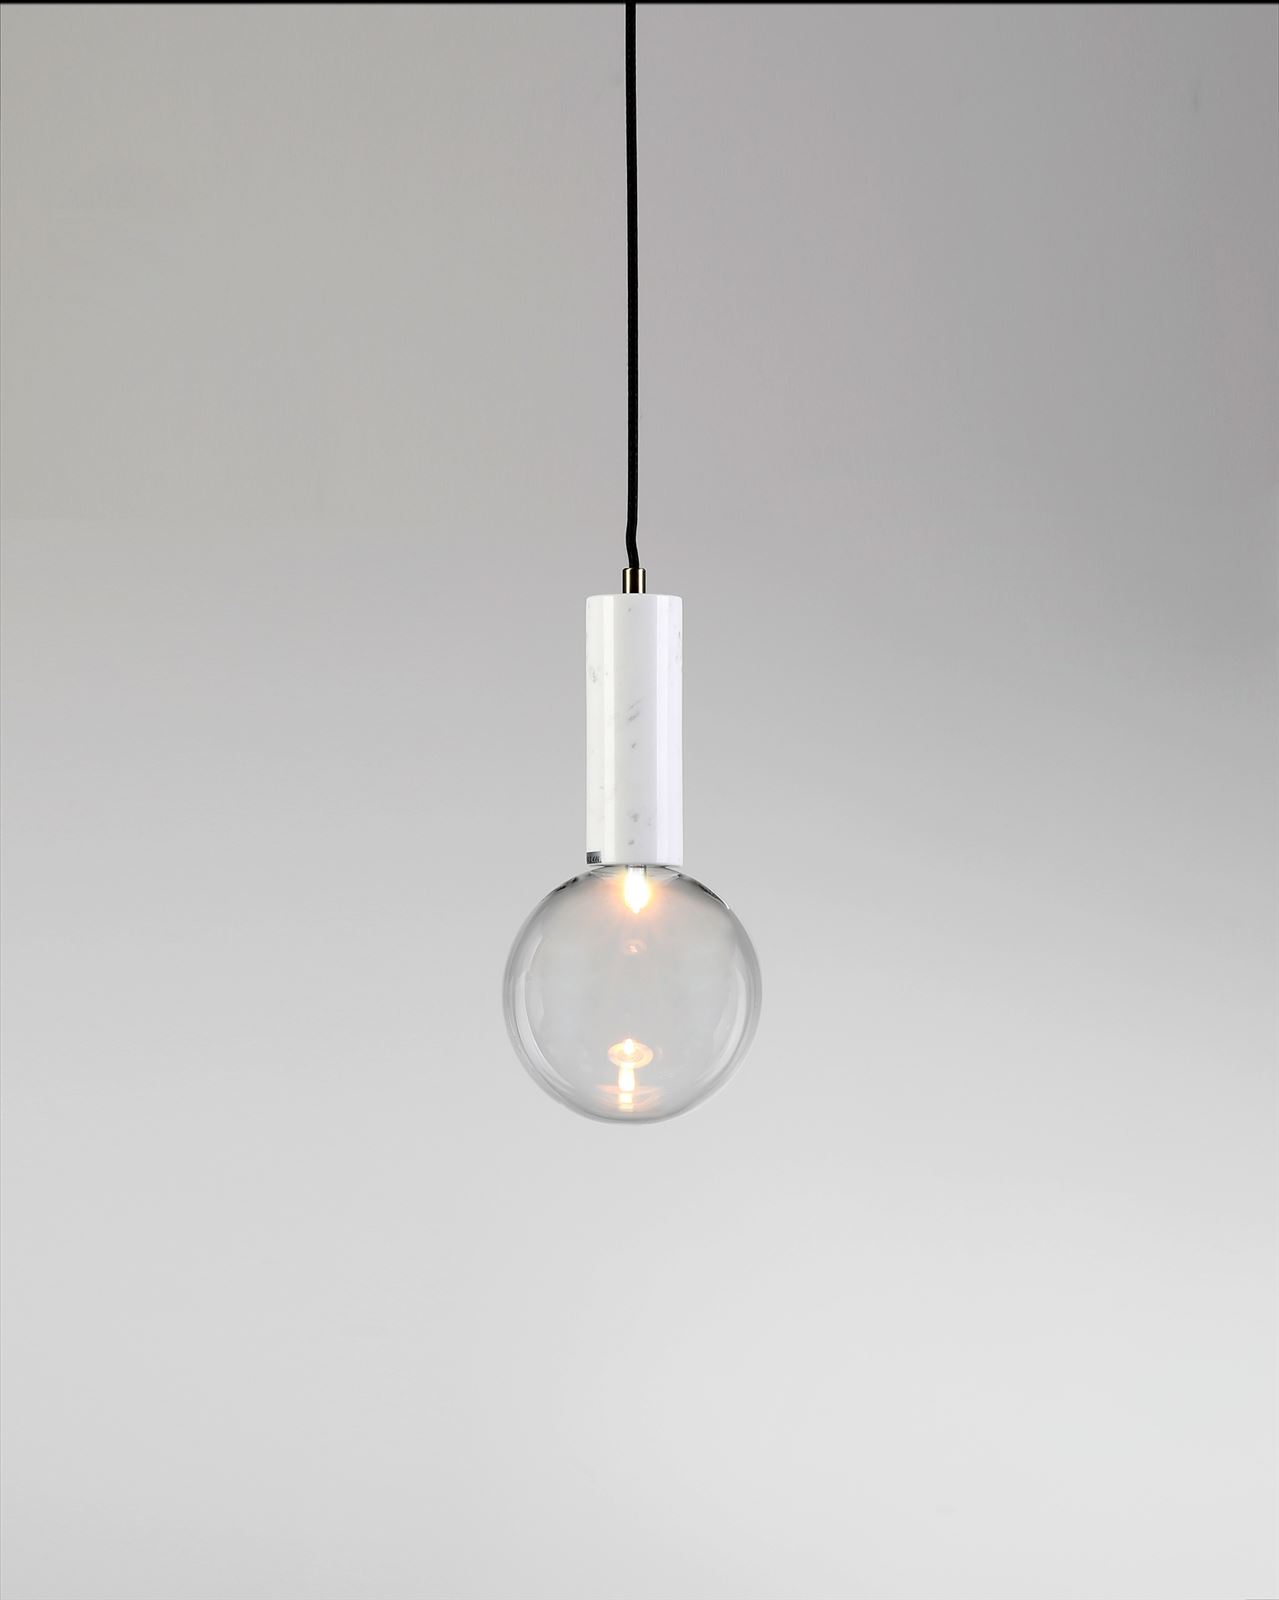 גופי תאורה בקטגוריית: מנורות תלויות ,שם המוצר: BADOLINA M